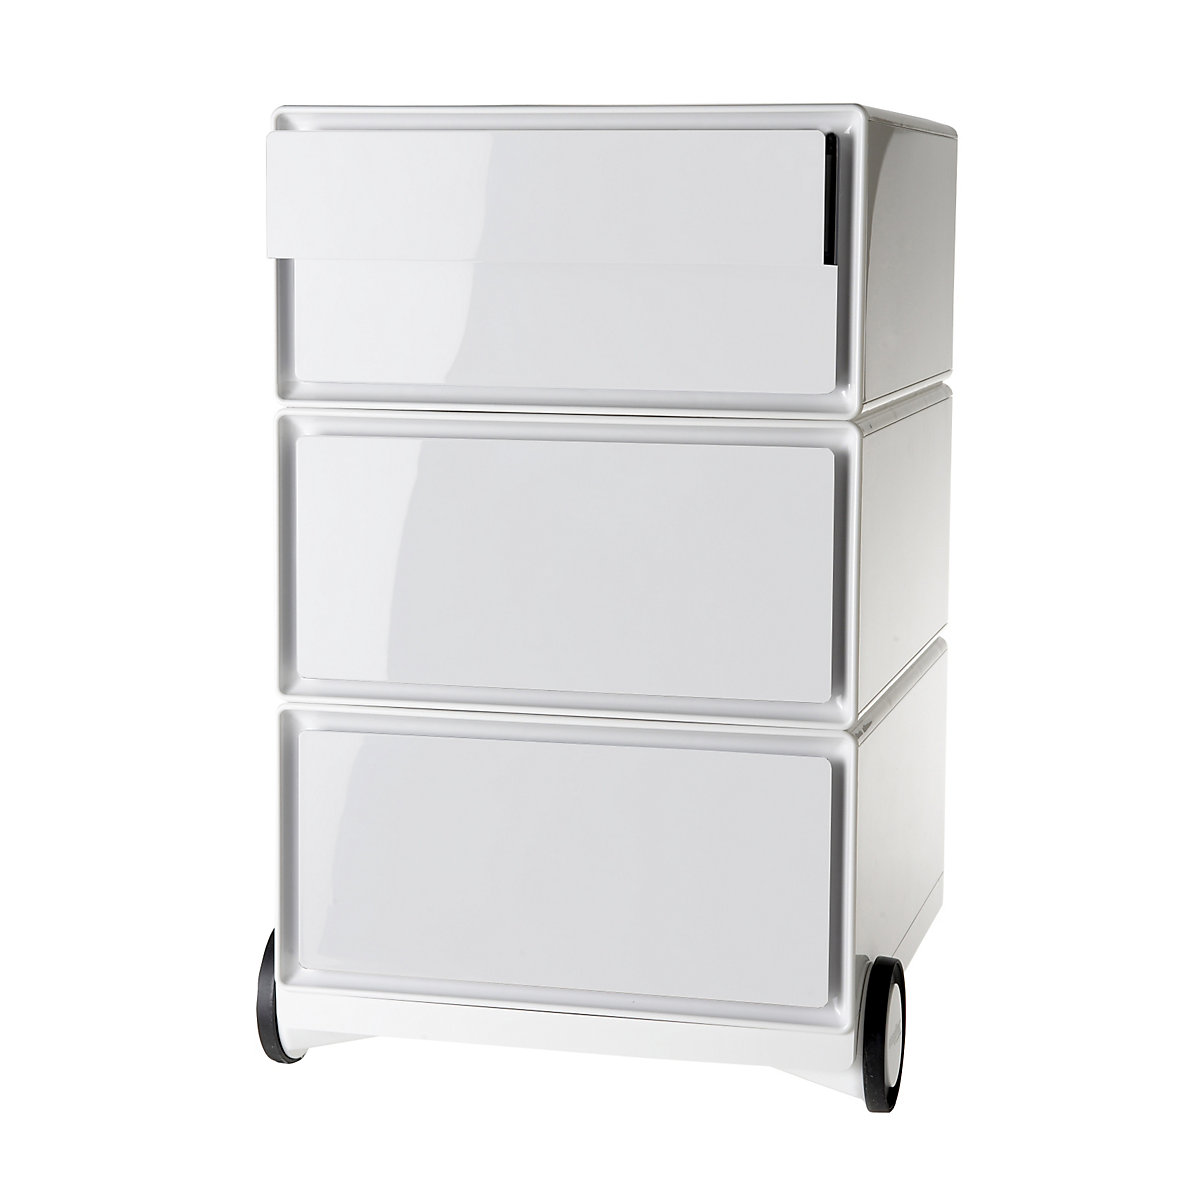 Pokretni ladičar easyBox® – Paperflow, 2 ladice, 2 plitke ladice, u bijeloj / bijeloj boji